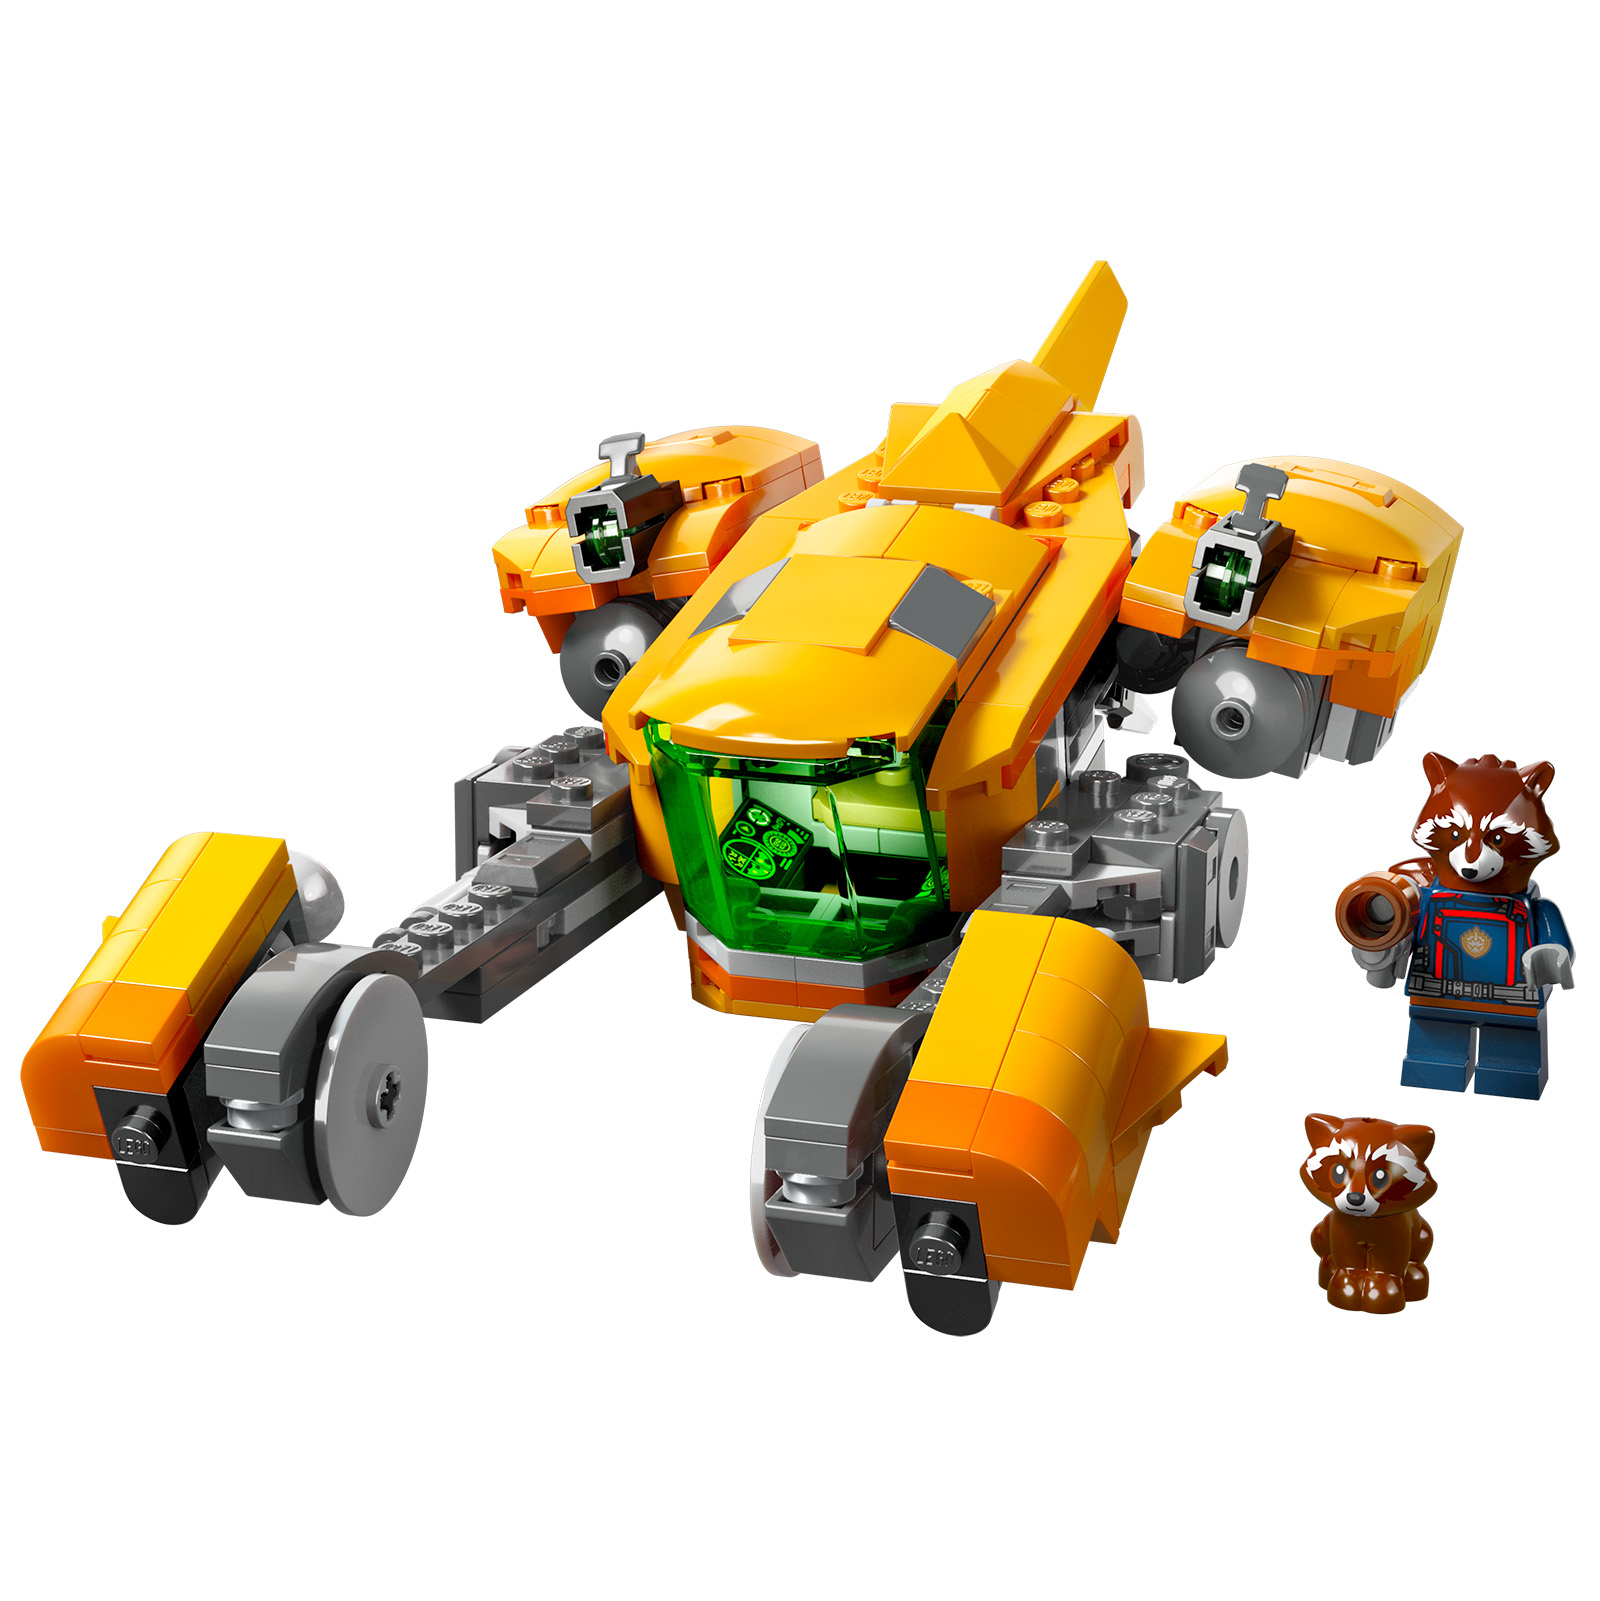 Nouveautés LEGO Marvel 2023 Guardians of the Galaxy Vol. 3 : l